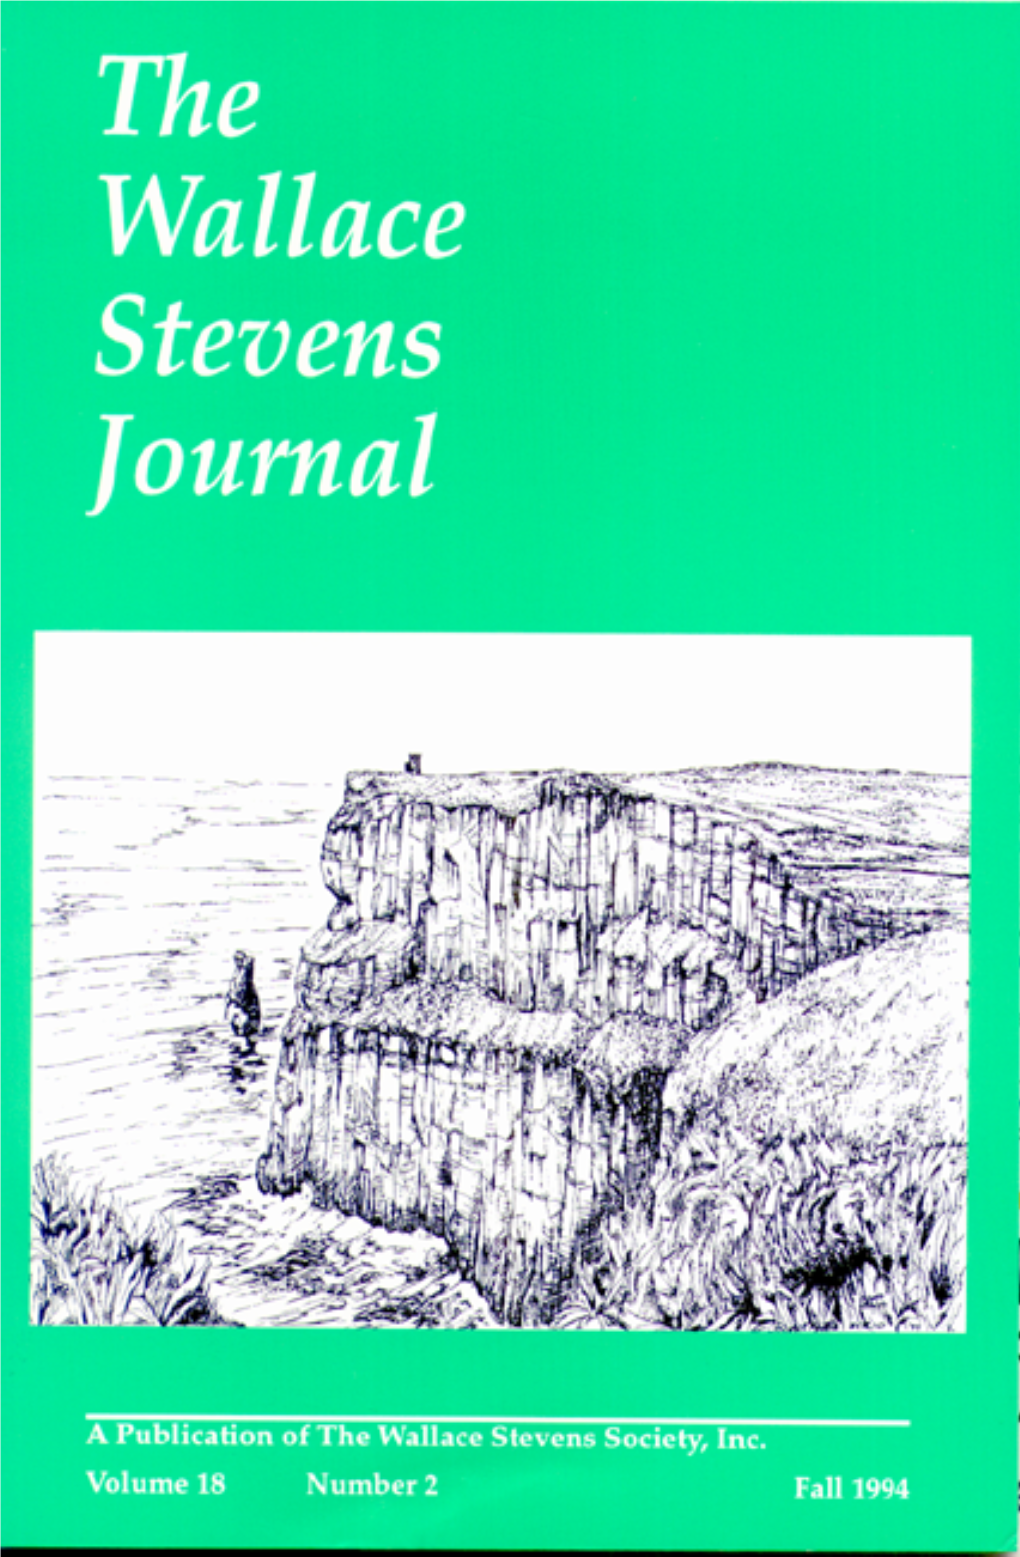 Vol. 18, No. 2 (Fall 1994)